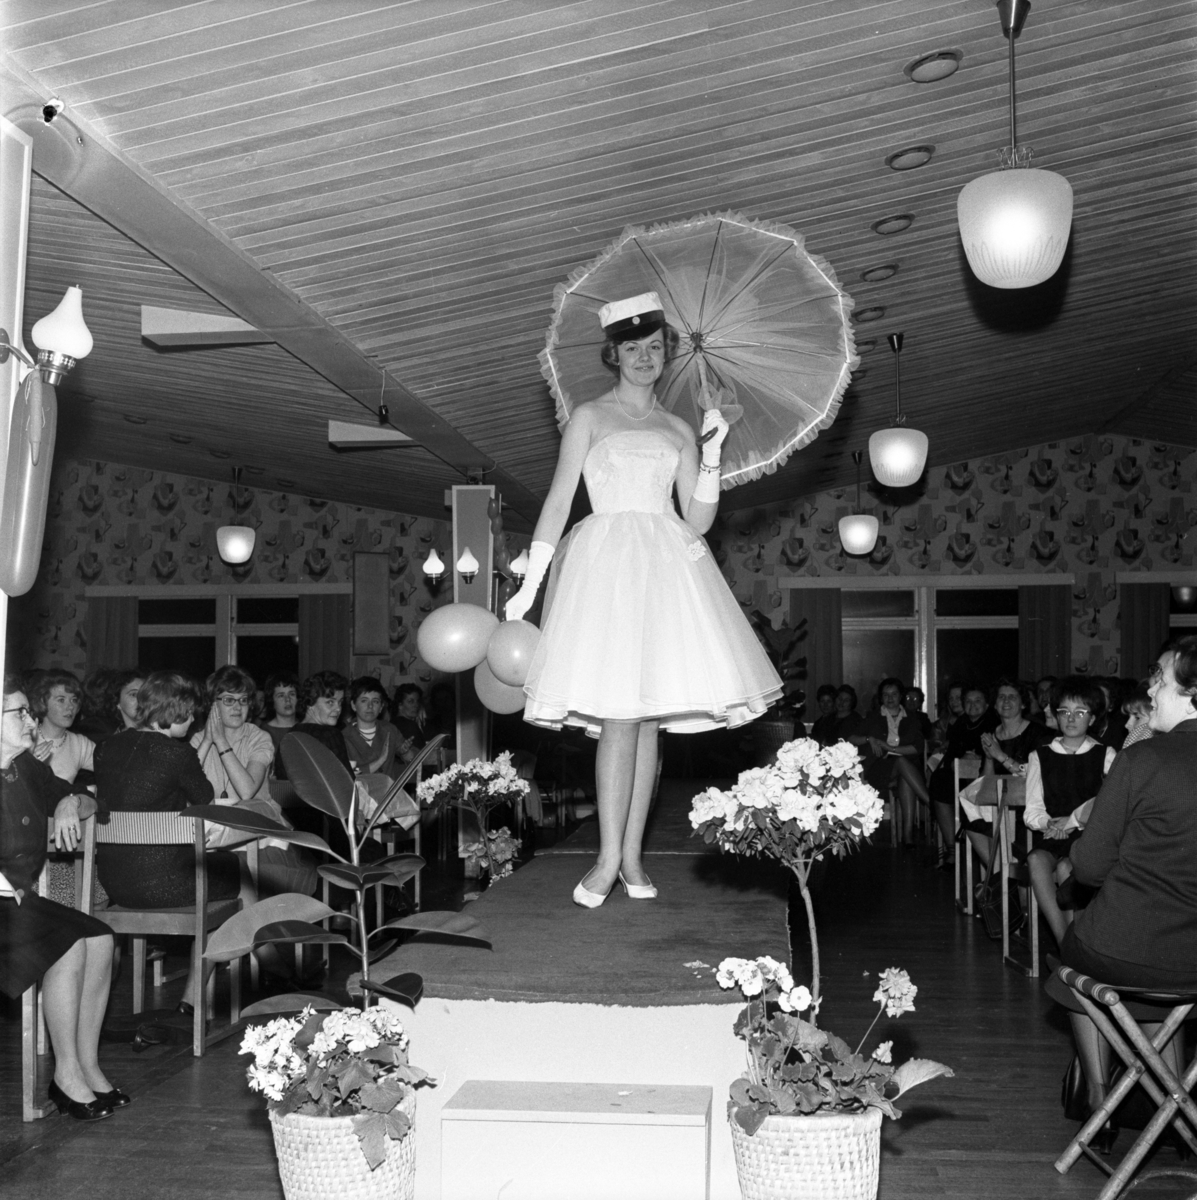 Modevisning i Huskvarna Folkets park våren 1961. På podiet går Gunnel Steén iklädd vit klänning, studentmössa och bär på ett parasoll. Medarrangör var Wera-magasinet i Huskvarna och konferensier var dess föreståndare Bitta Snygg.